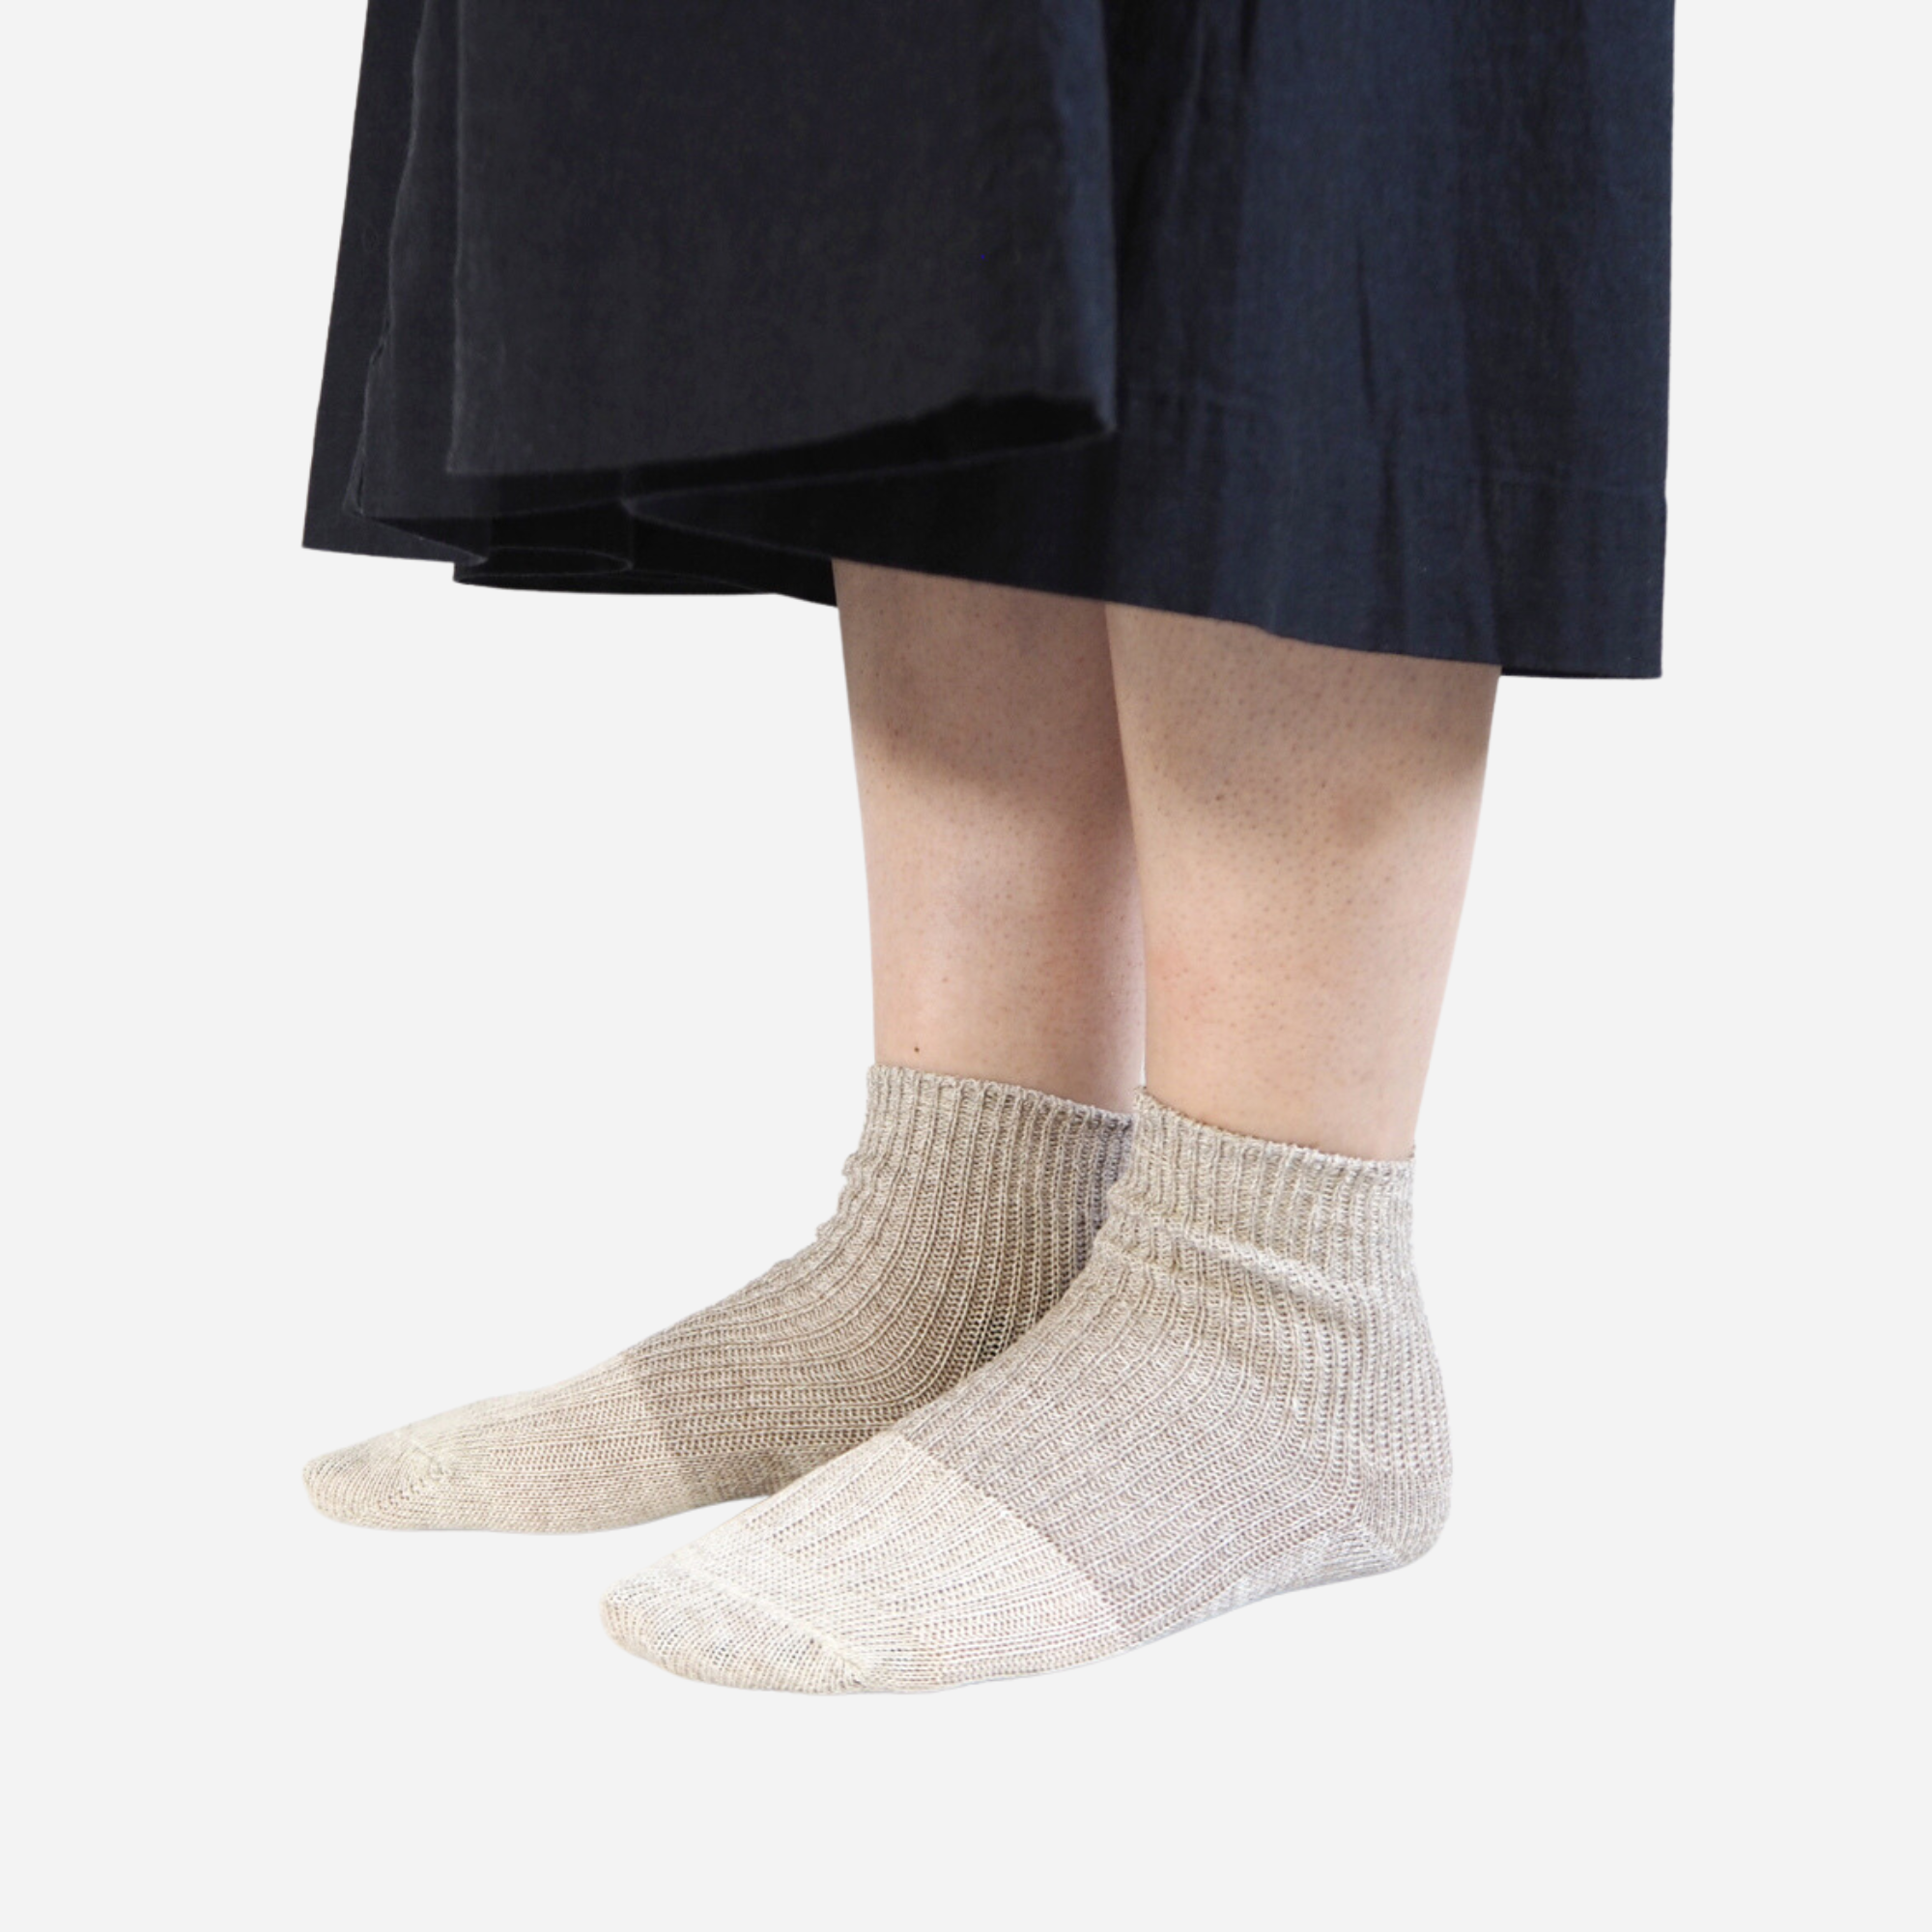 Mino washi socks